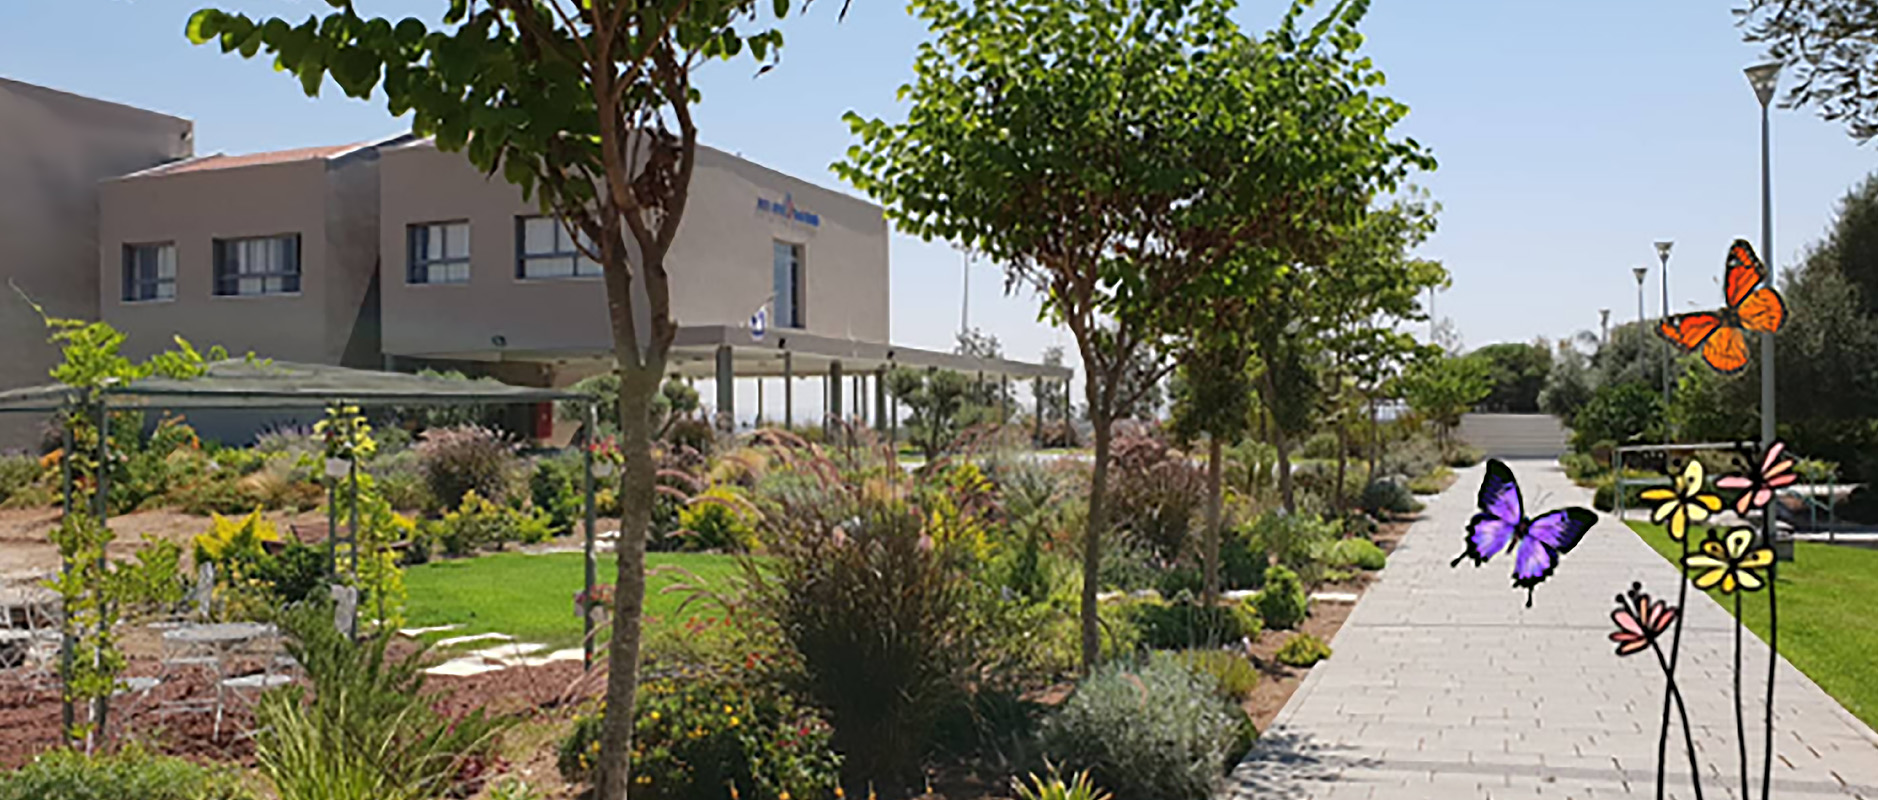 Beit Ruth - campus pathway